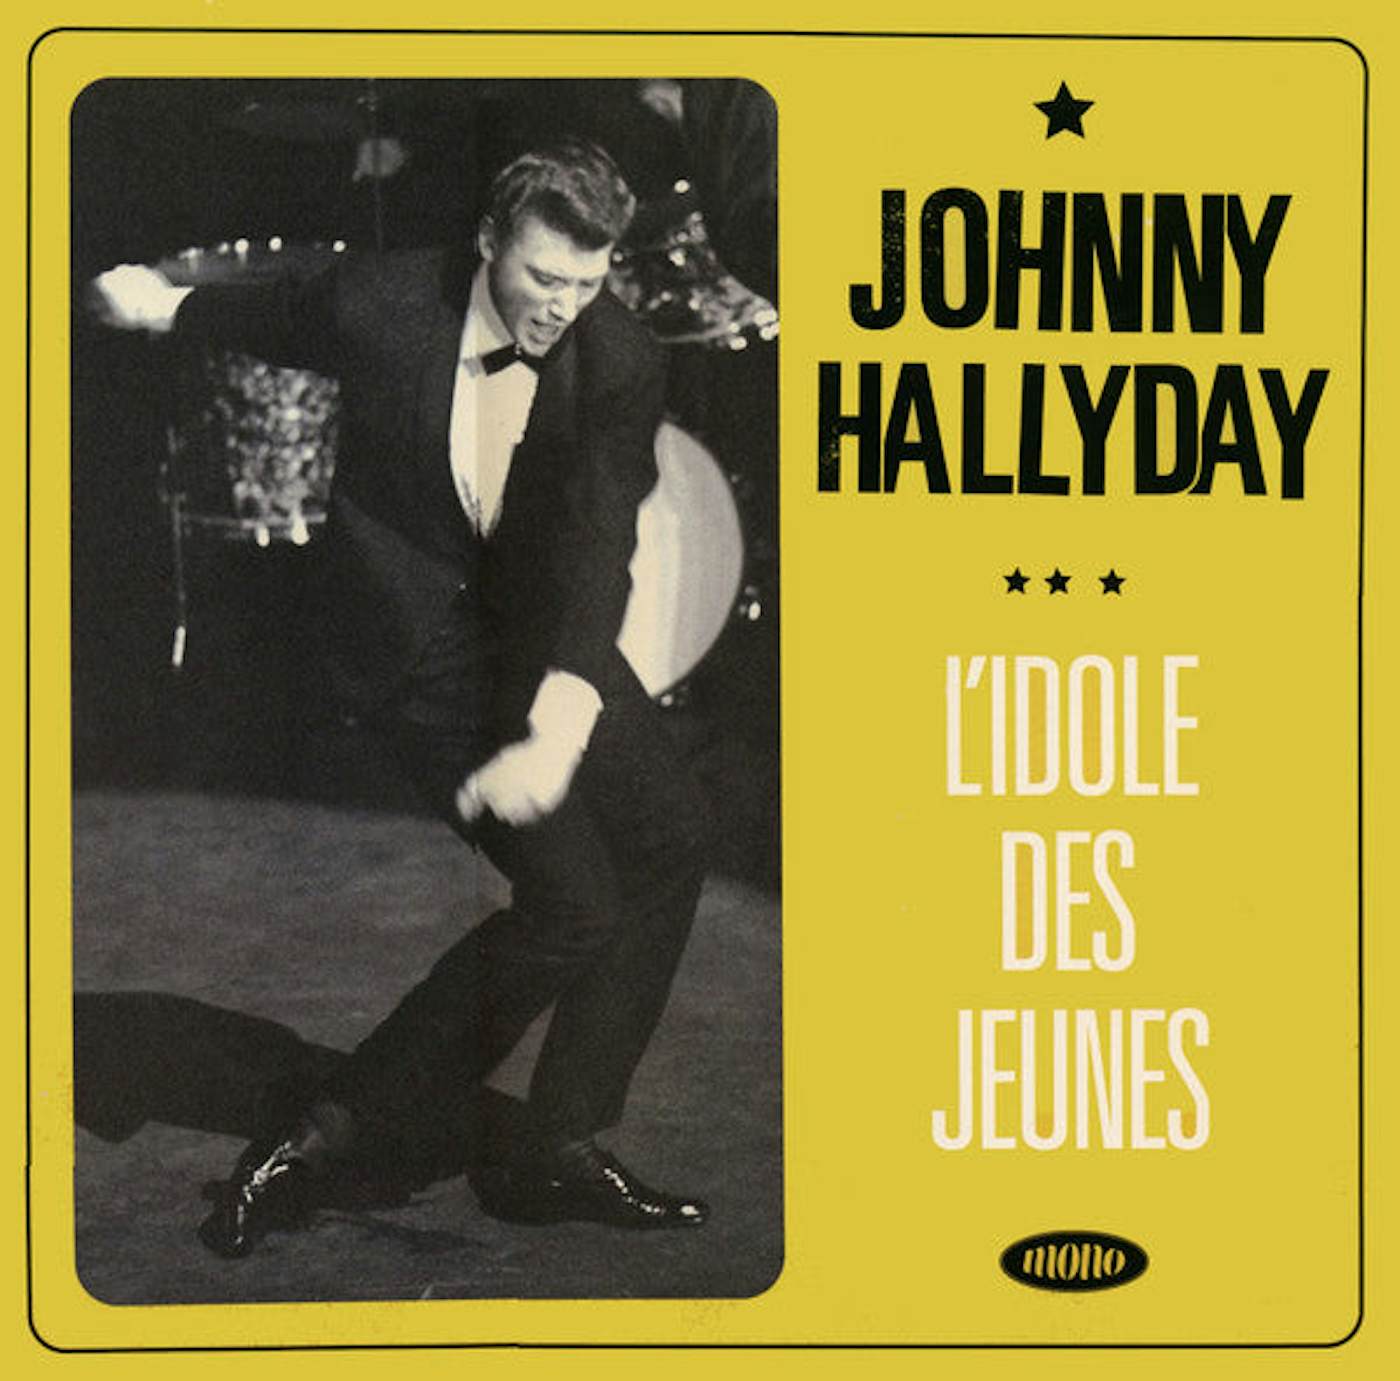 Johnny Hallyday / L'idole - LP Vinyl Record $34.67